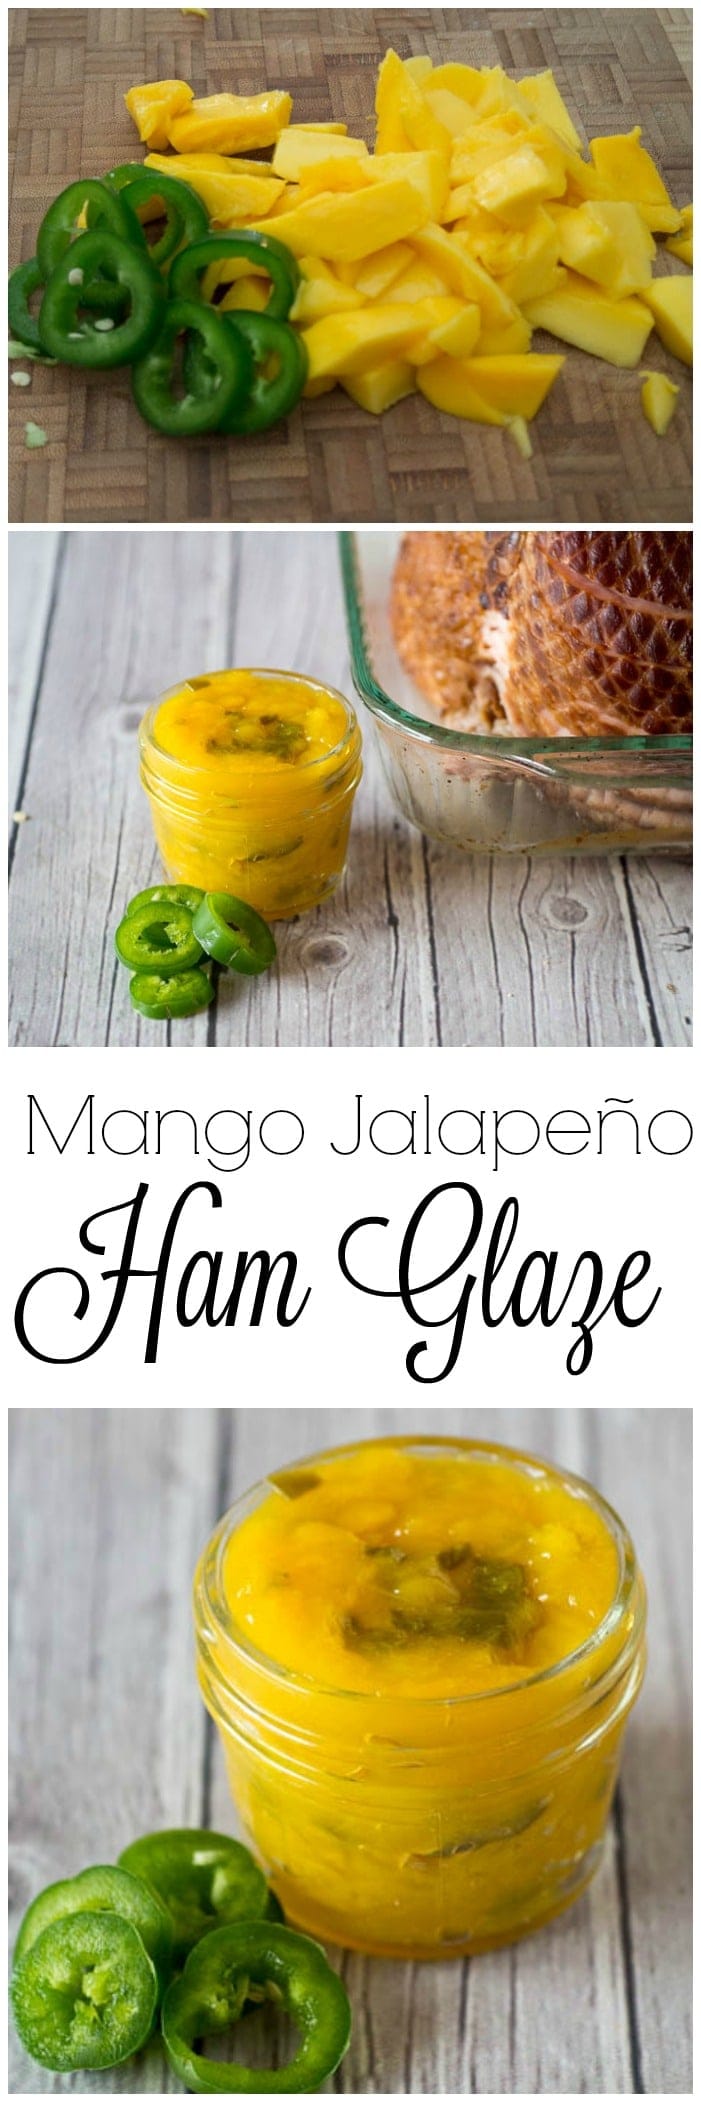 Mango jalapeno glaze for ham.